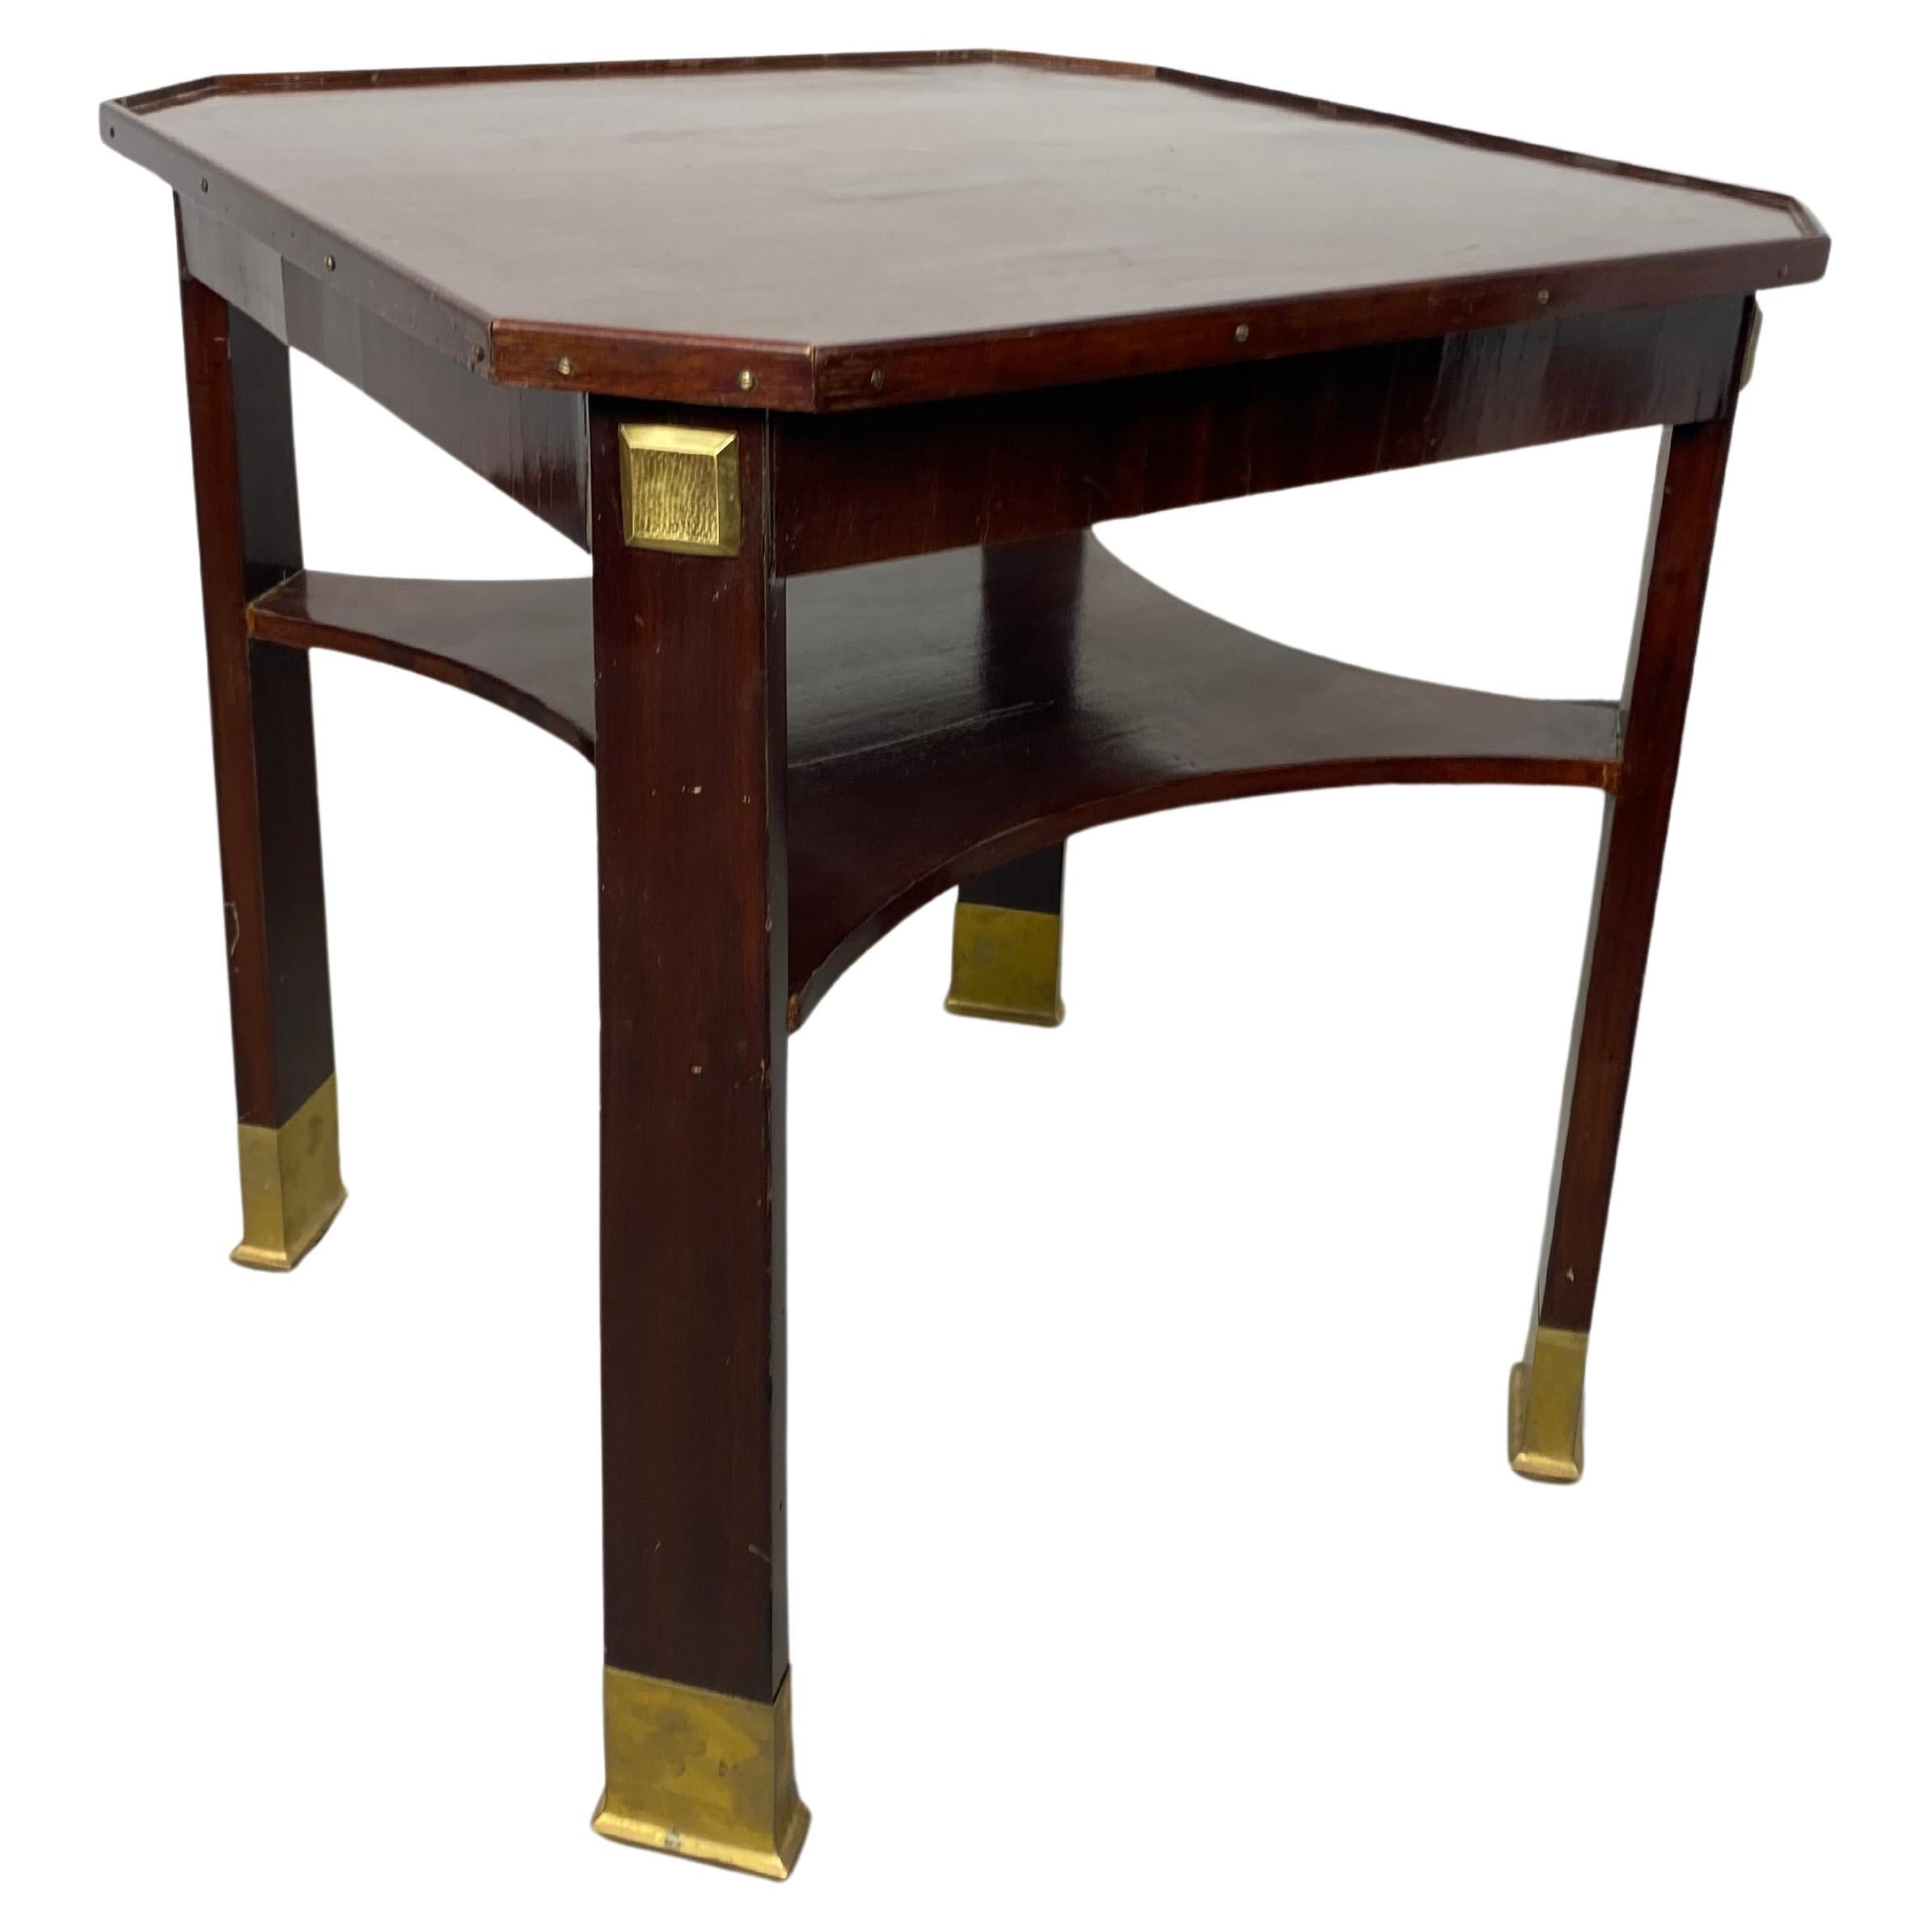 Jugendstil coffee table by Adolf Loos for F.O.Schmidt